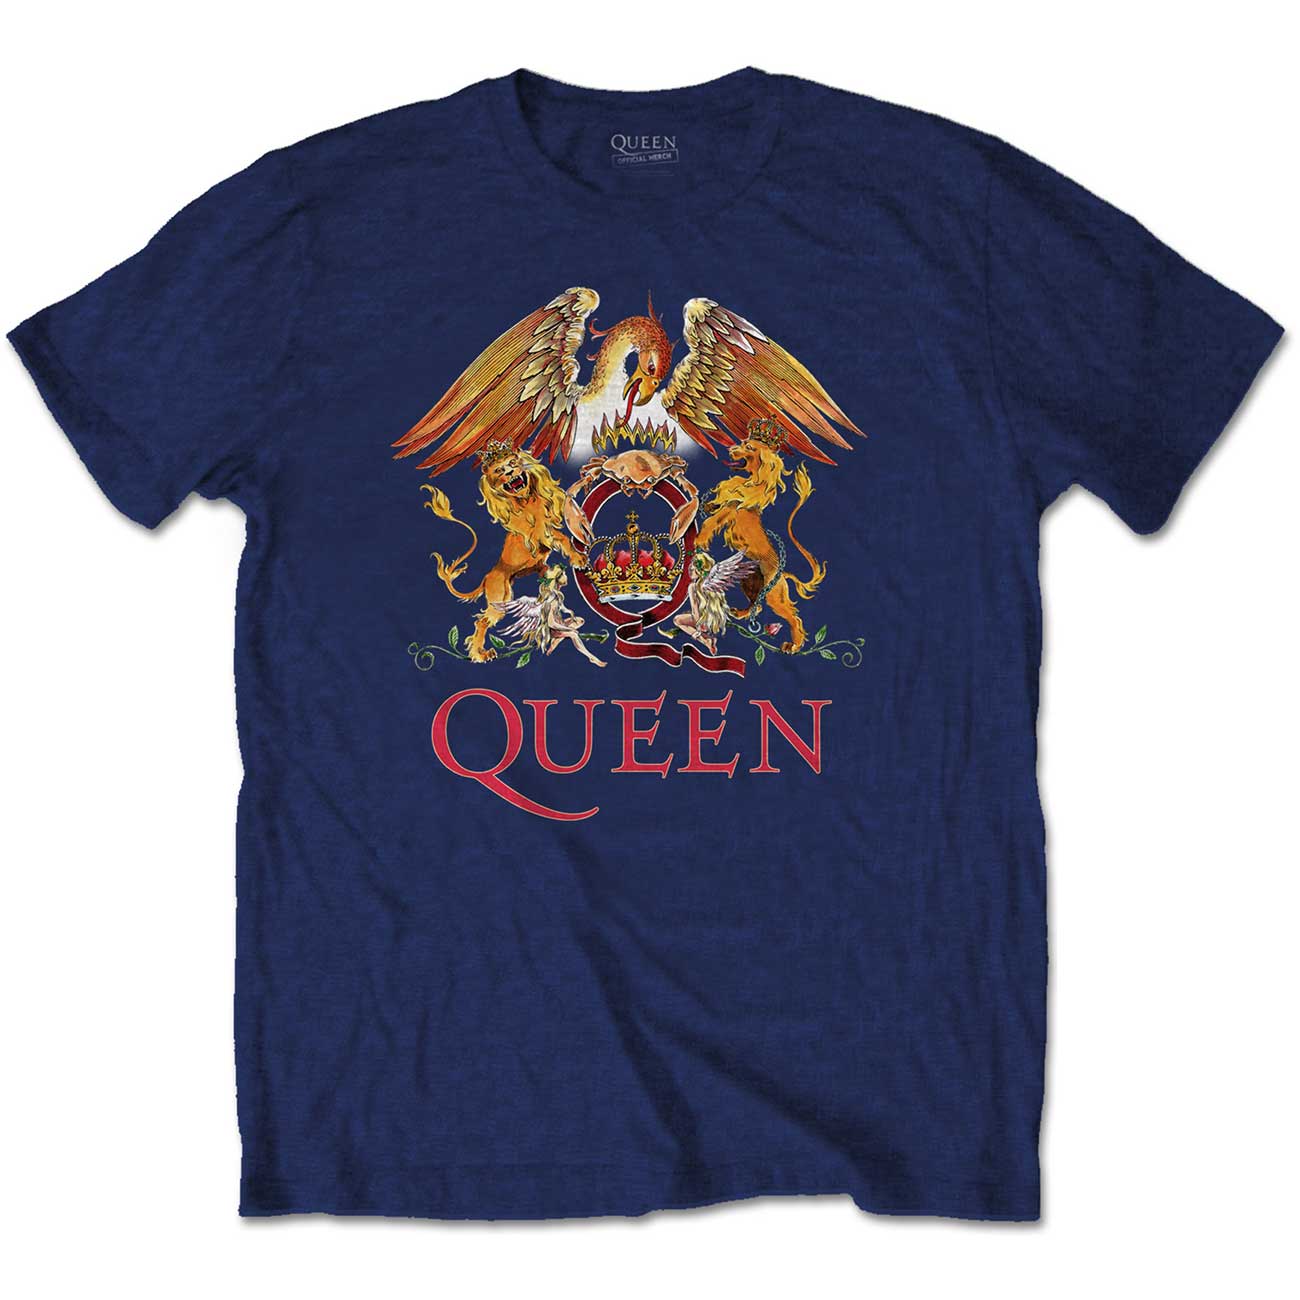 Queen - Classic Crest Navy (Medium)